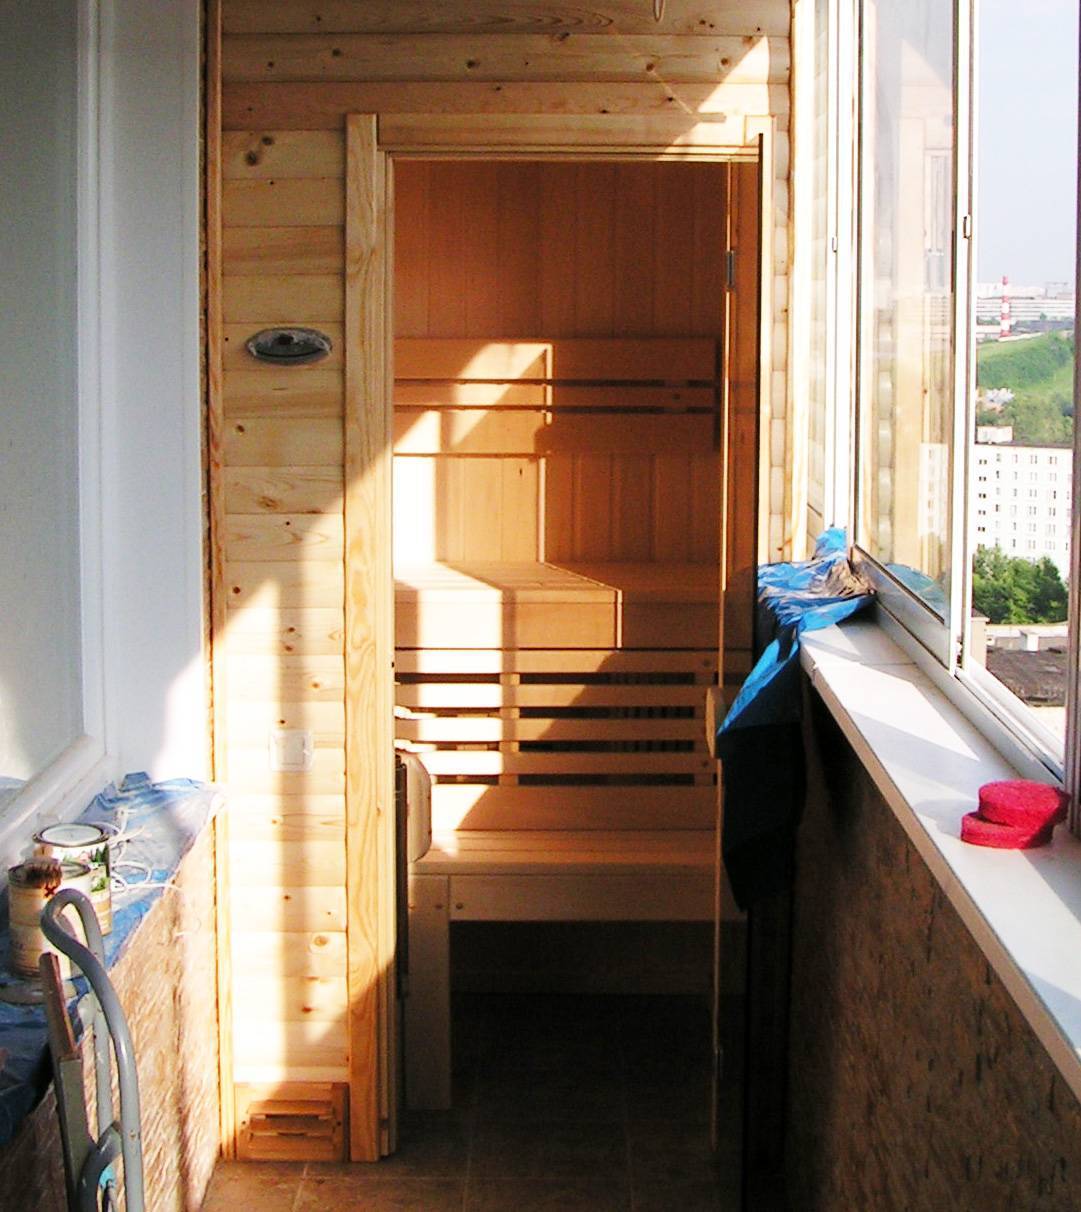 Сауна на балкон: фото, баня на лоджии своими руками, мини-сауна инфракрасная, видео, как сделать сауну, отзывы